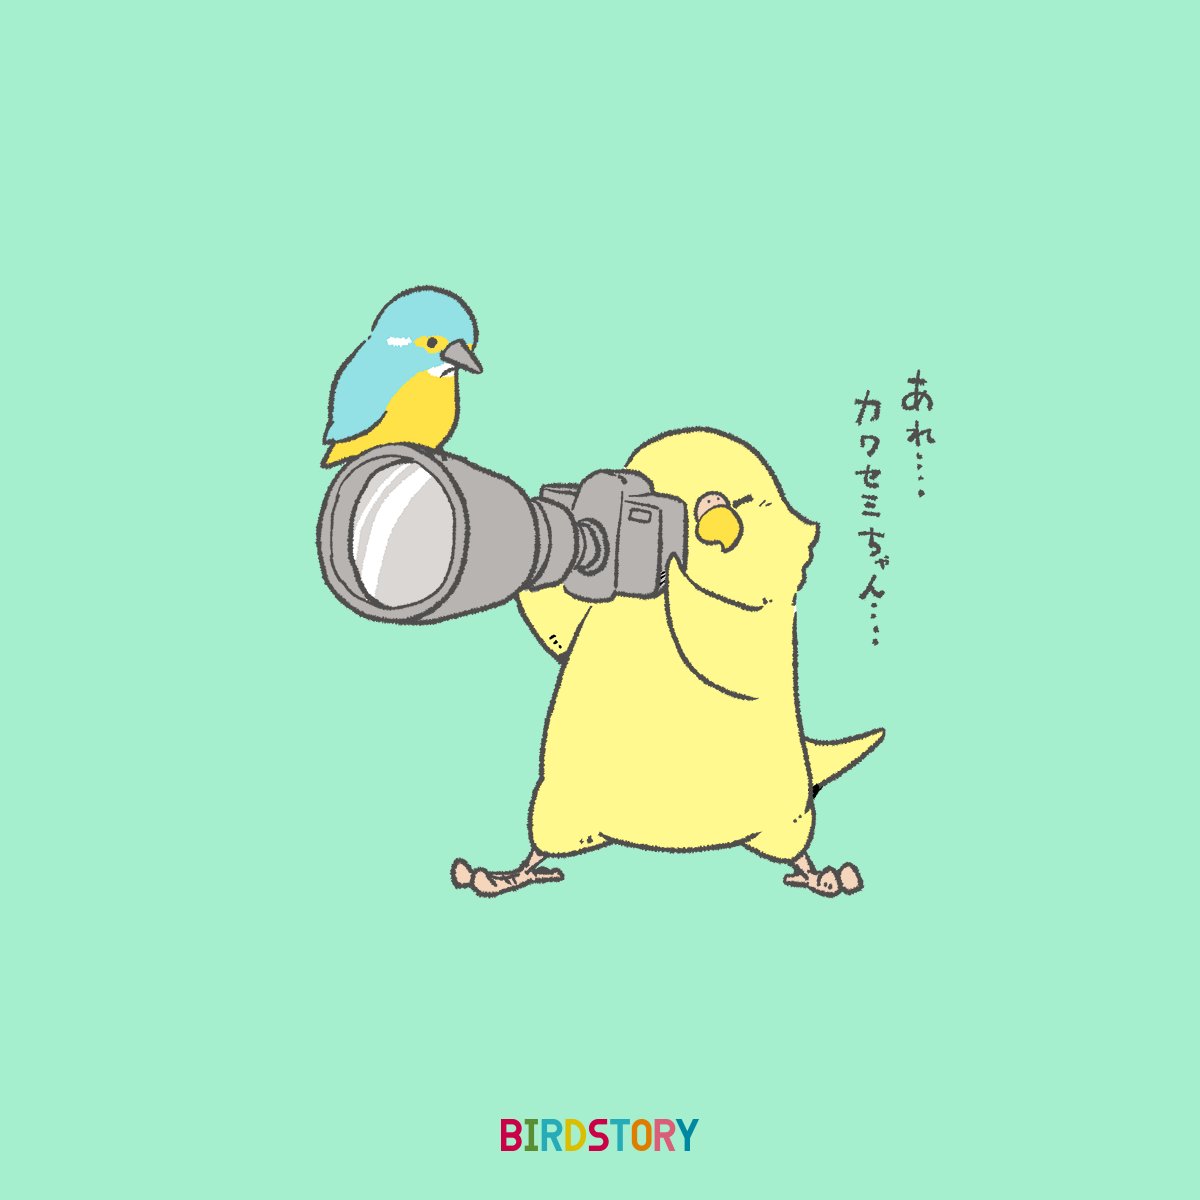 おはようございます。
本日は4月10日、ふぉとの語呂合わせから、フォトの日とのことです?
#BIRDSTORY 
#フォトの日 #カワセミ 